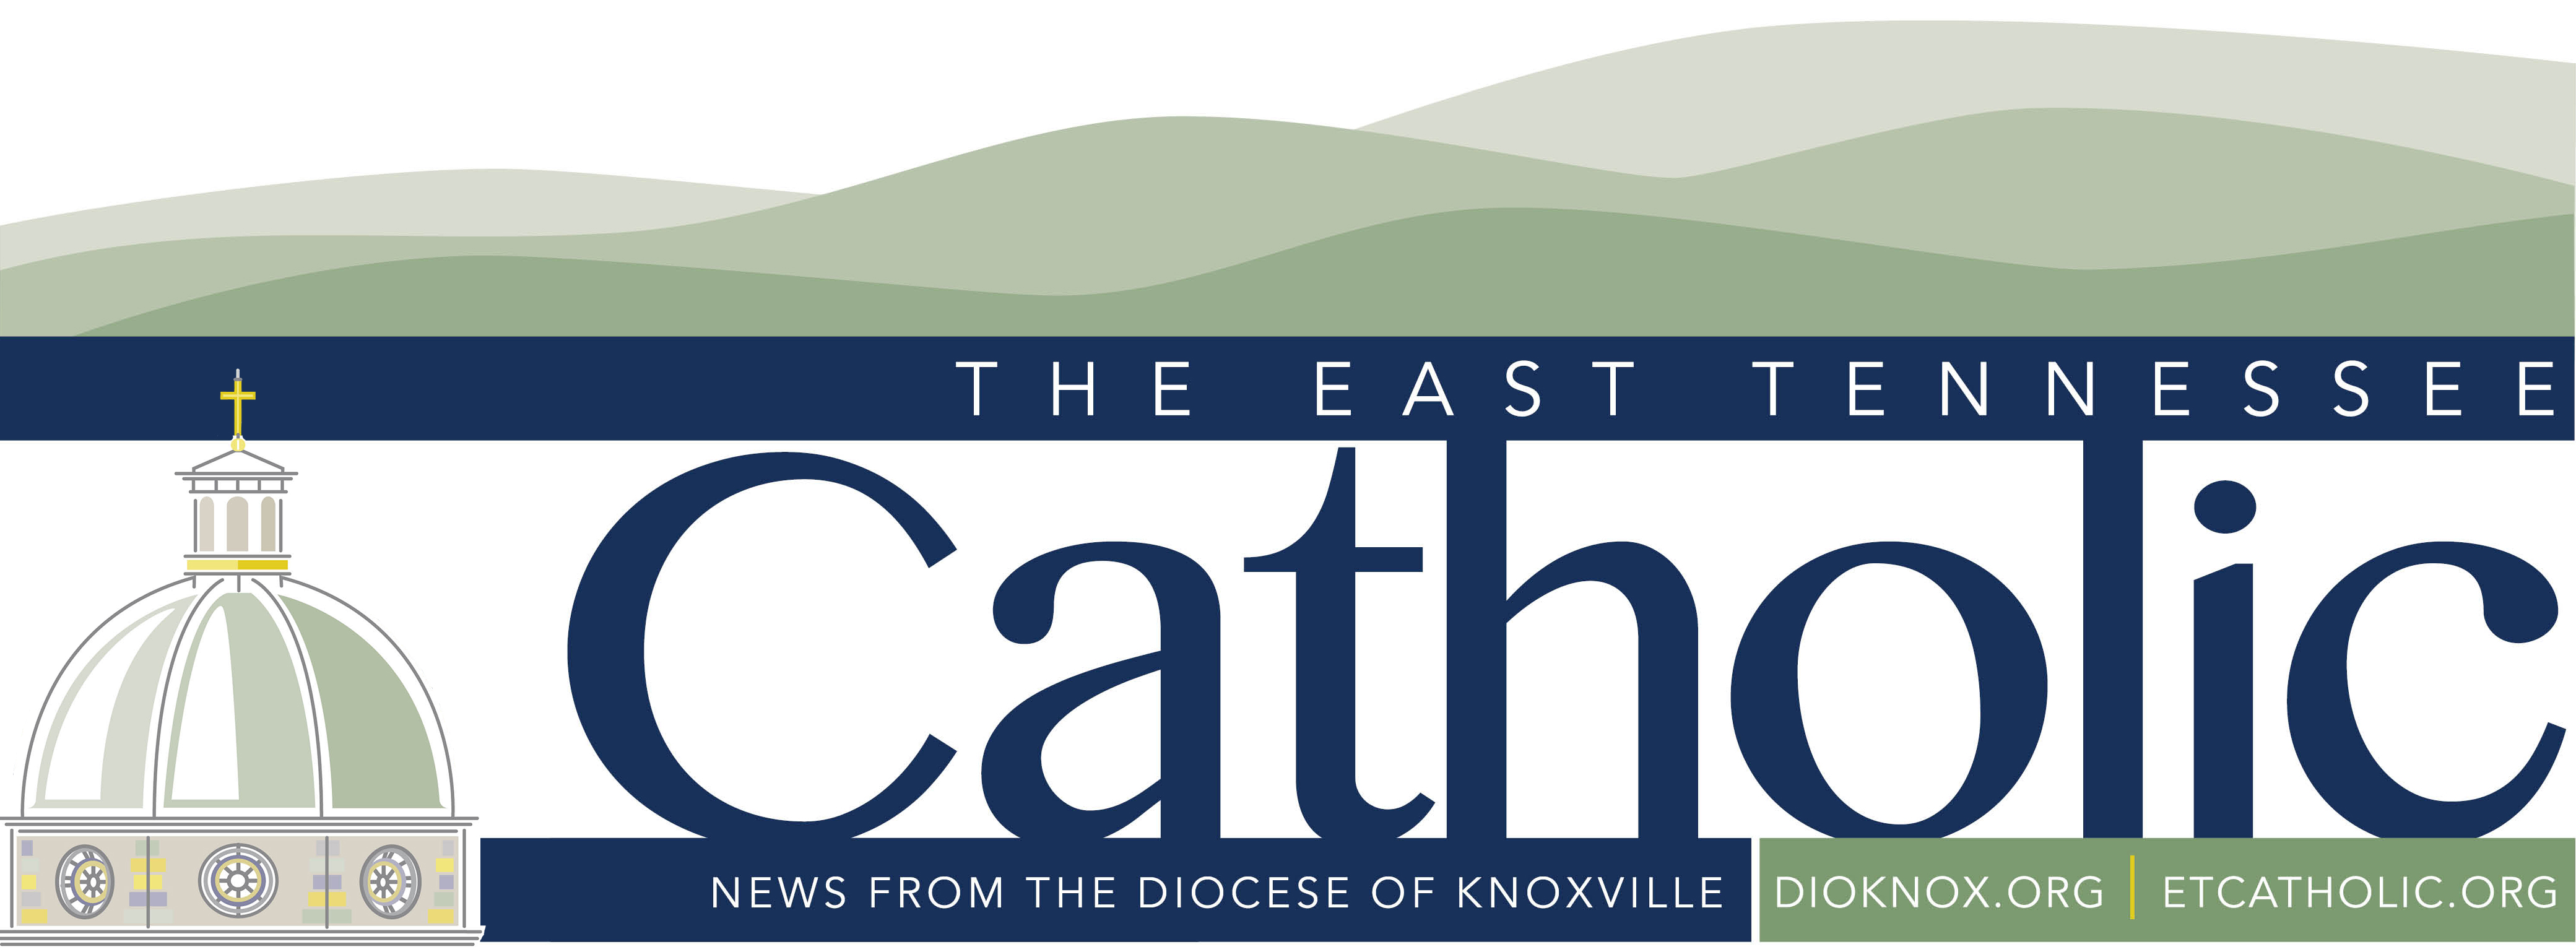 East Tennessee Catholic